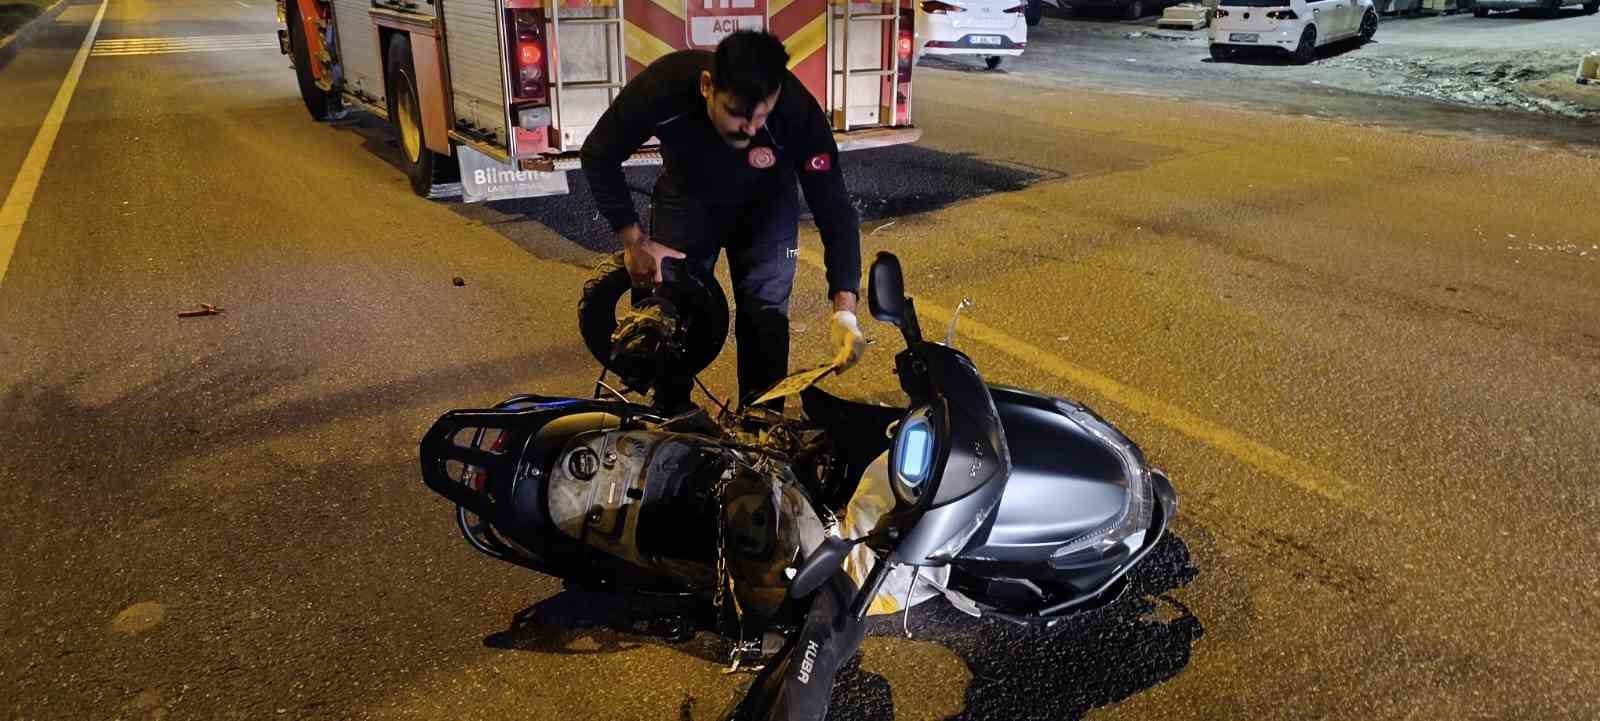 Mardin’de motosiklet sürücüsü, cip ile çarpışarak hayatını kaybetti